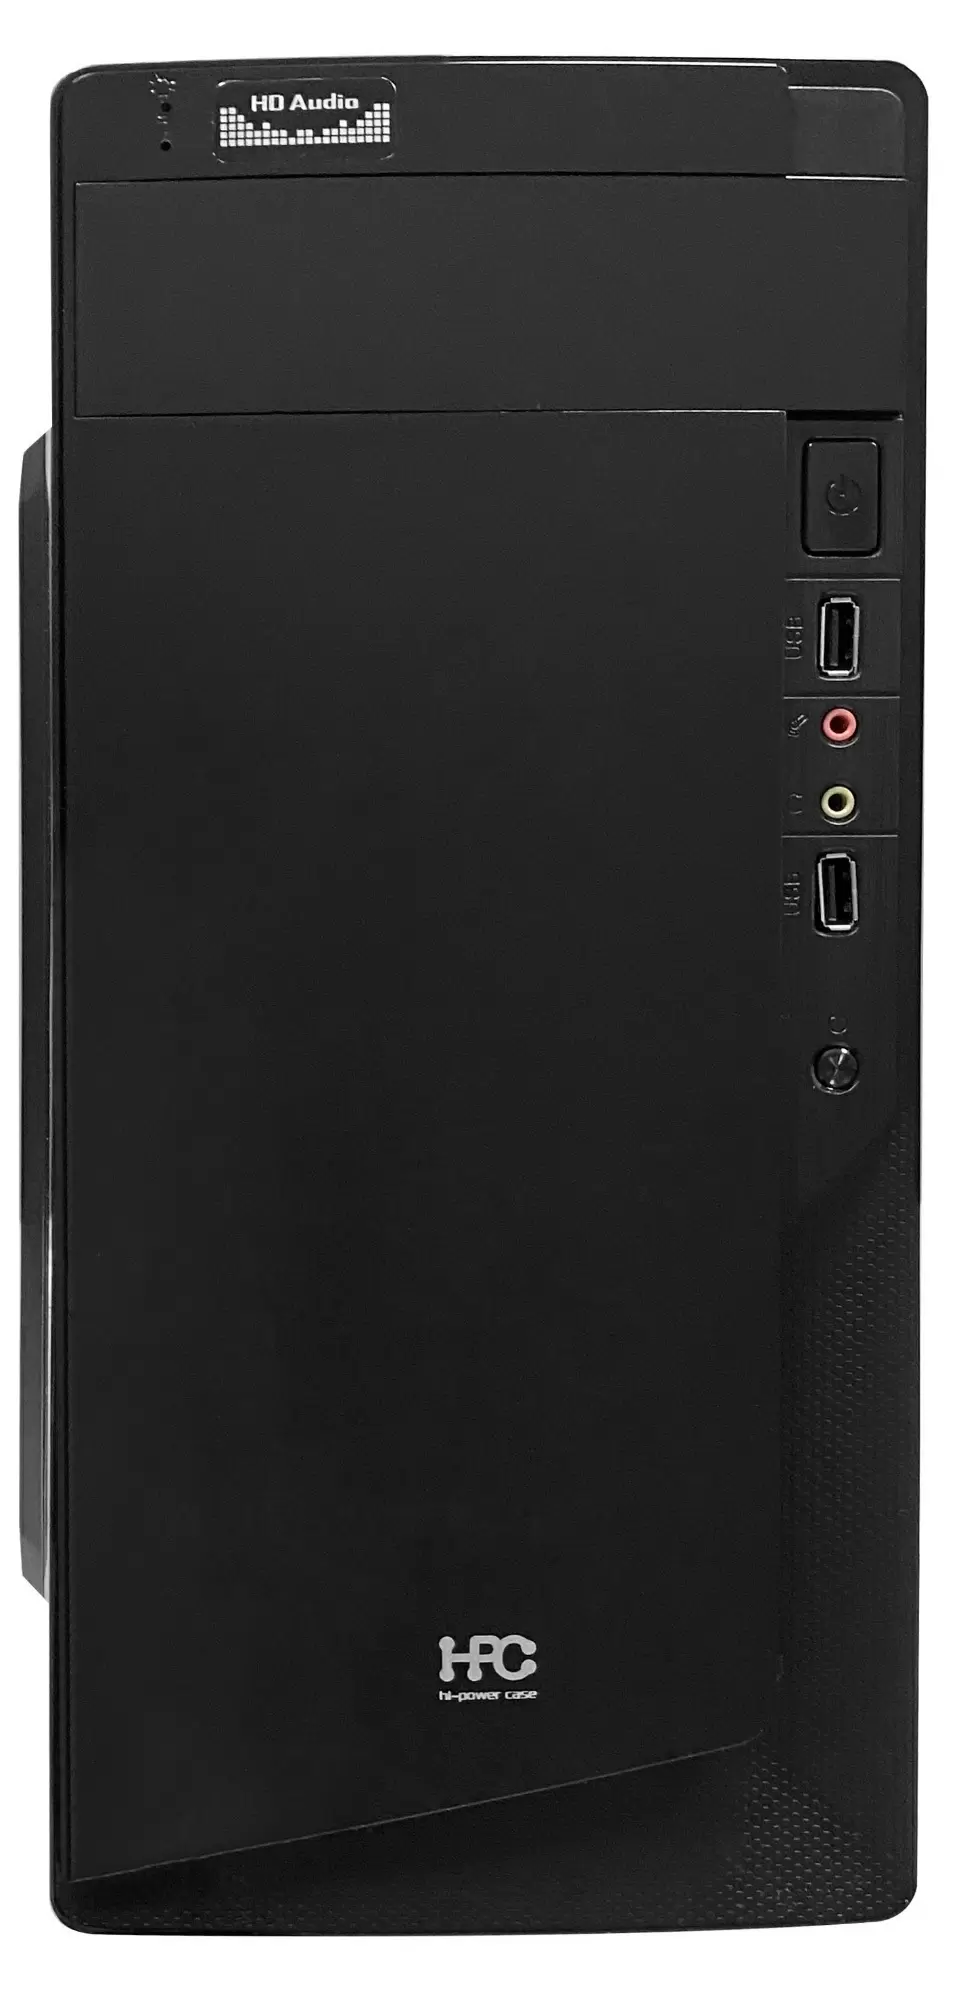 Системный блок Atol PC1035MP (Ryzen3 PRO 2200G/8ГБ/240ГБ/Linux), черный